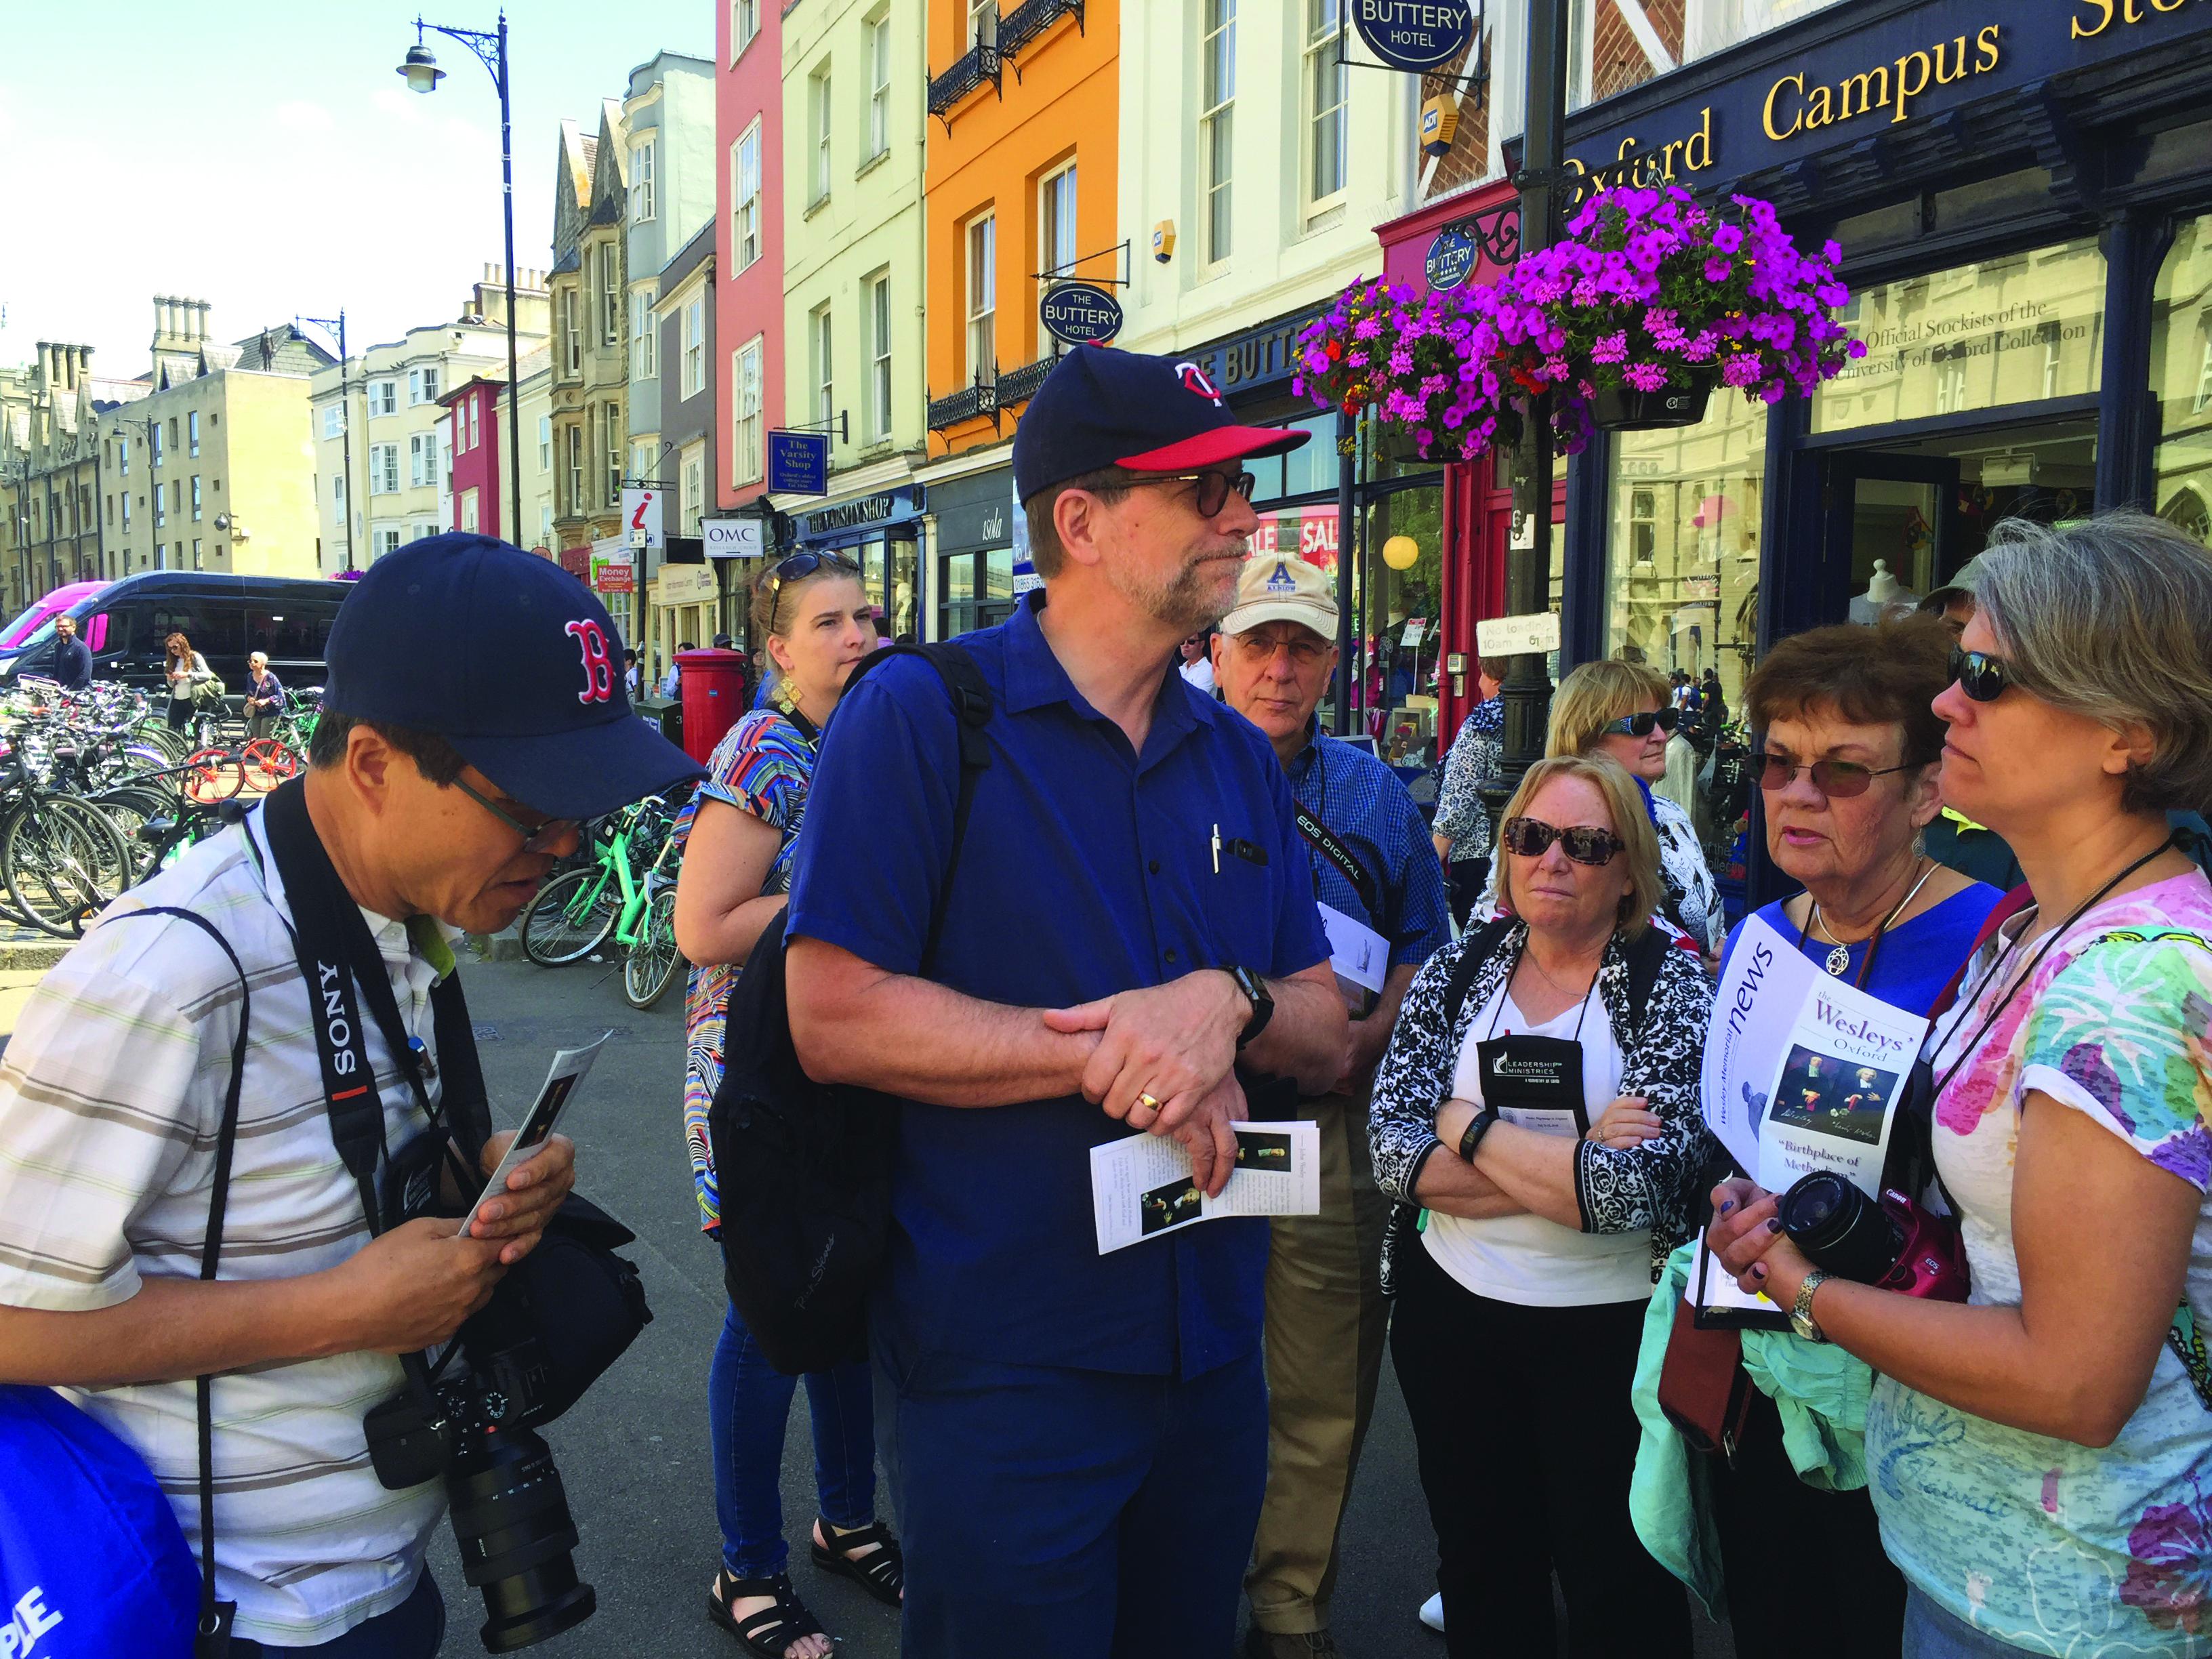 The Rev. Steve Manskar, center, leads a group of pilgrims through the streets of Oxford.